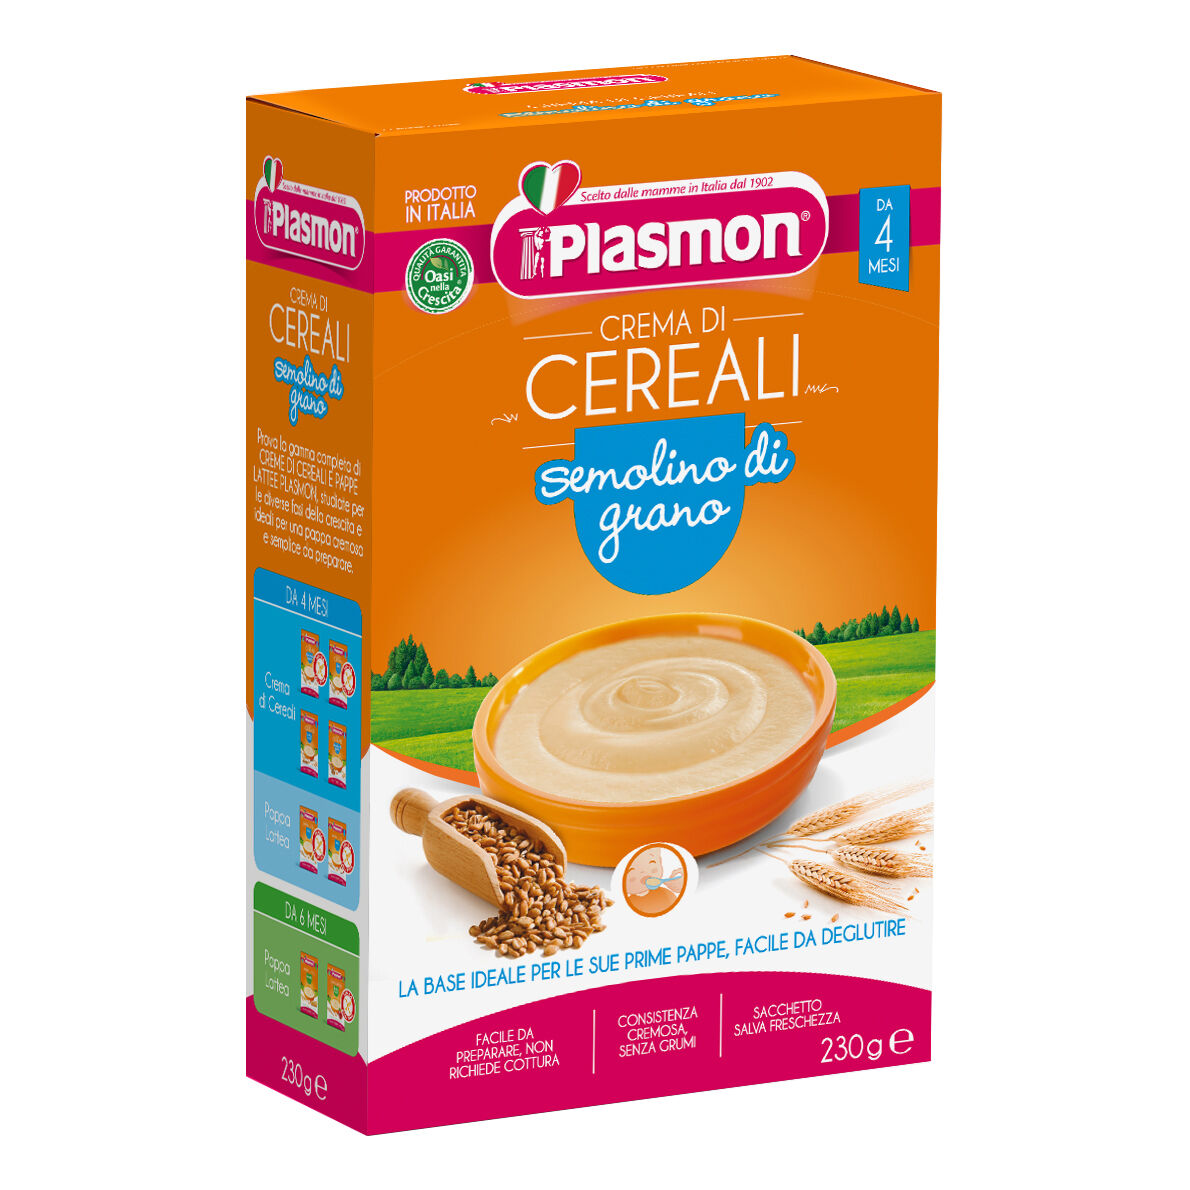 Plasmon (Heinz Italia Spa) Plasmon Cereali Crema Semolino